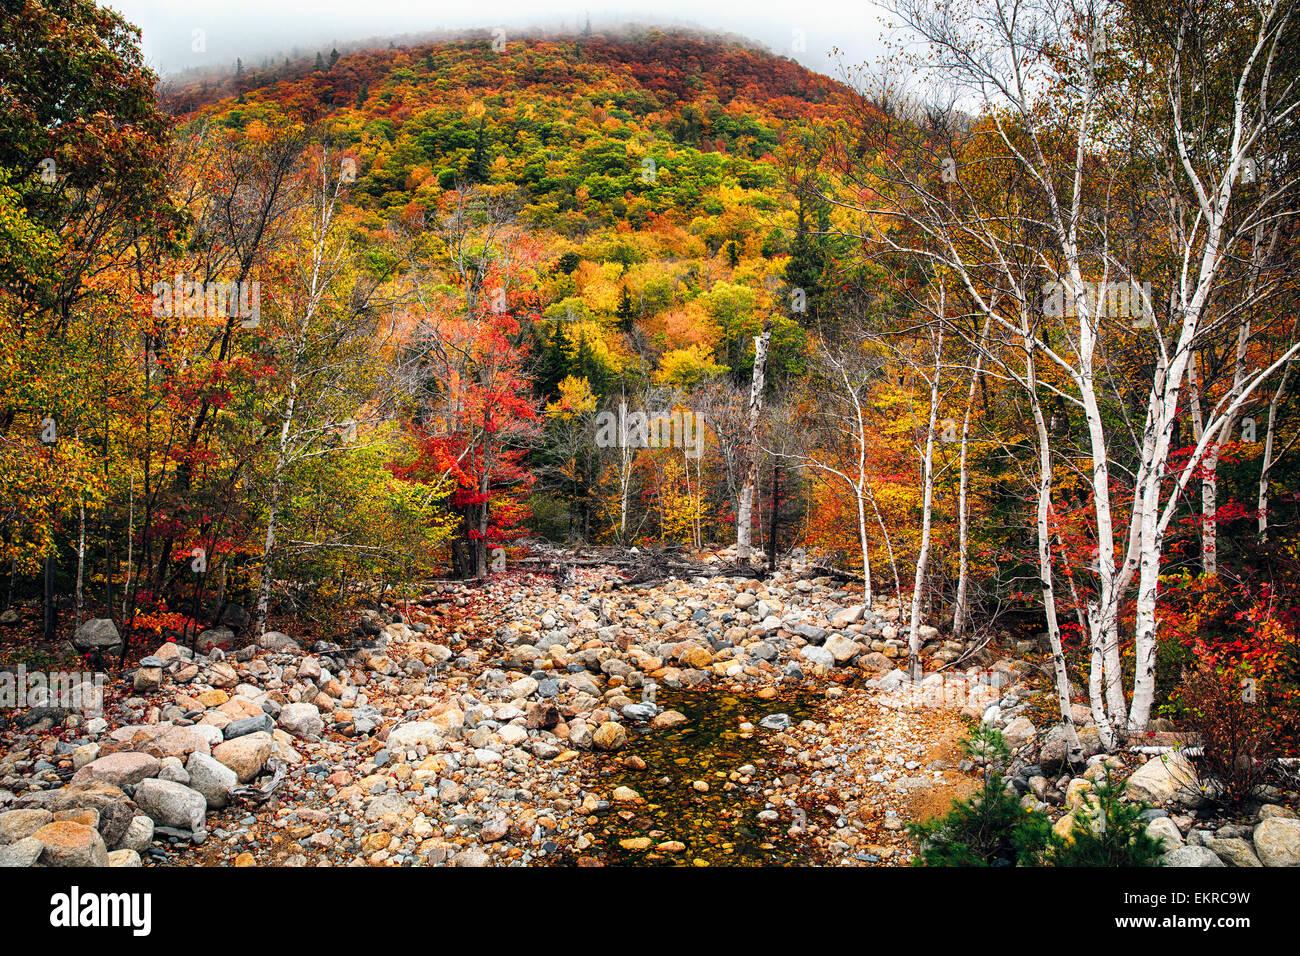 Low Angle View of a Mountain dans le brouillard et un ruisseau à sec à l'automne, White Mountains National Forest, New Hampshire Banque D'Images